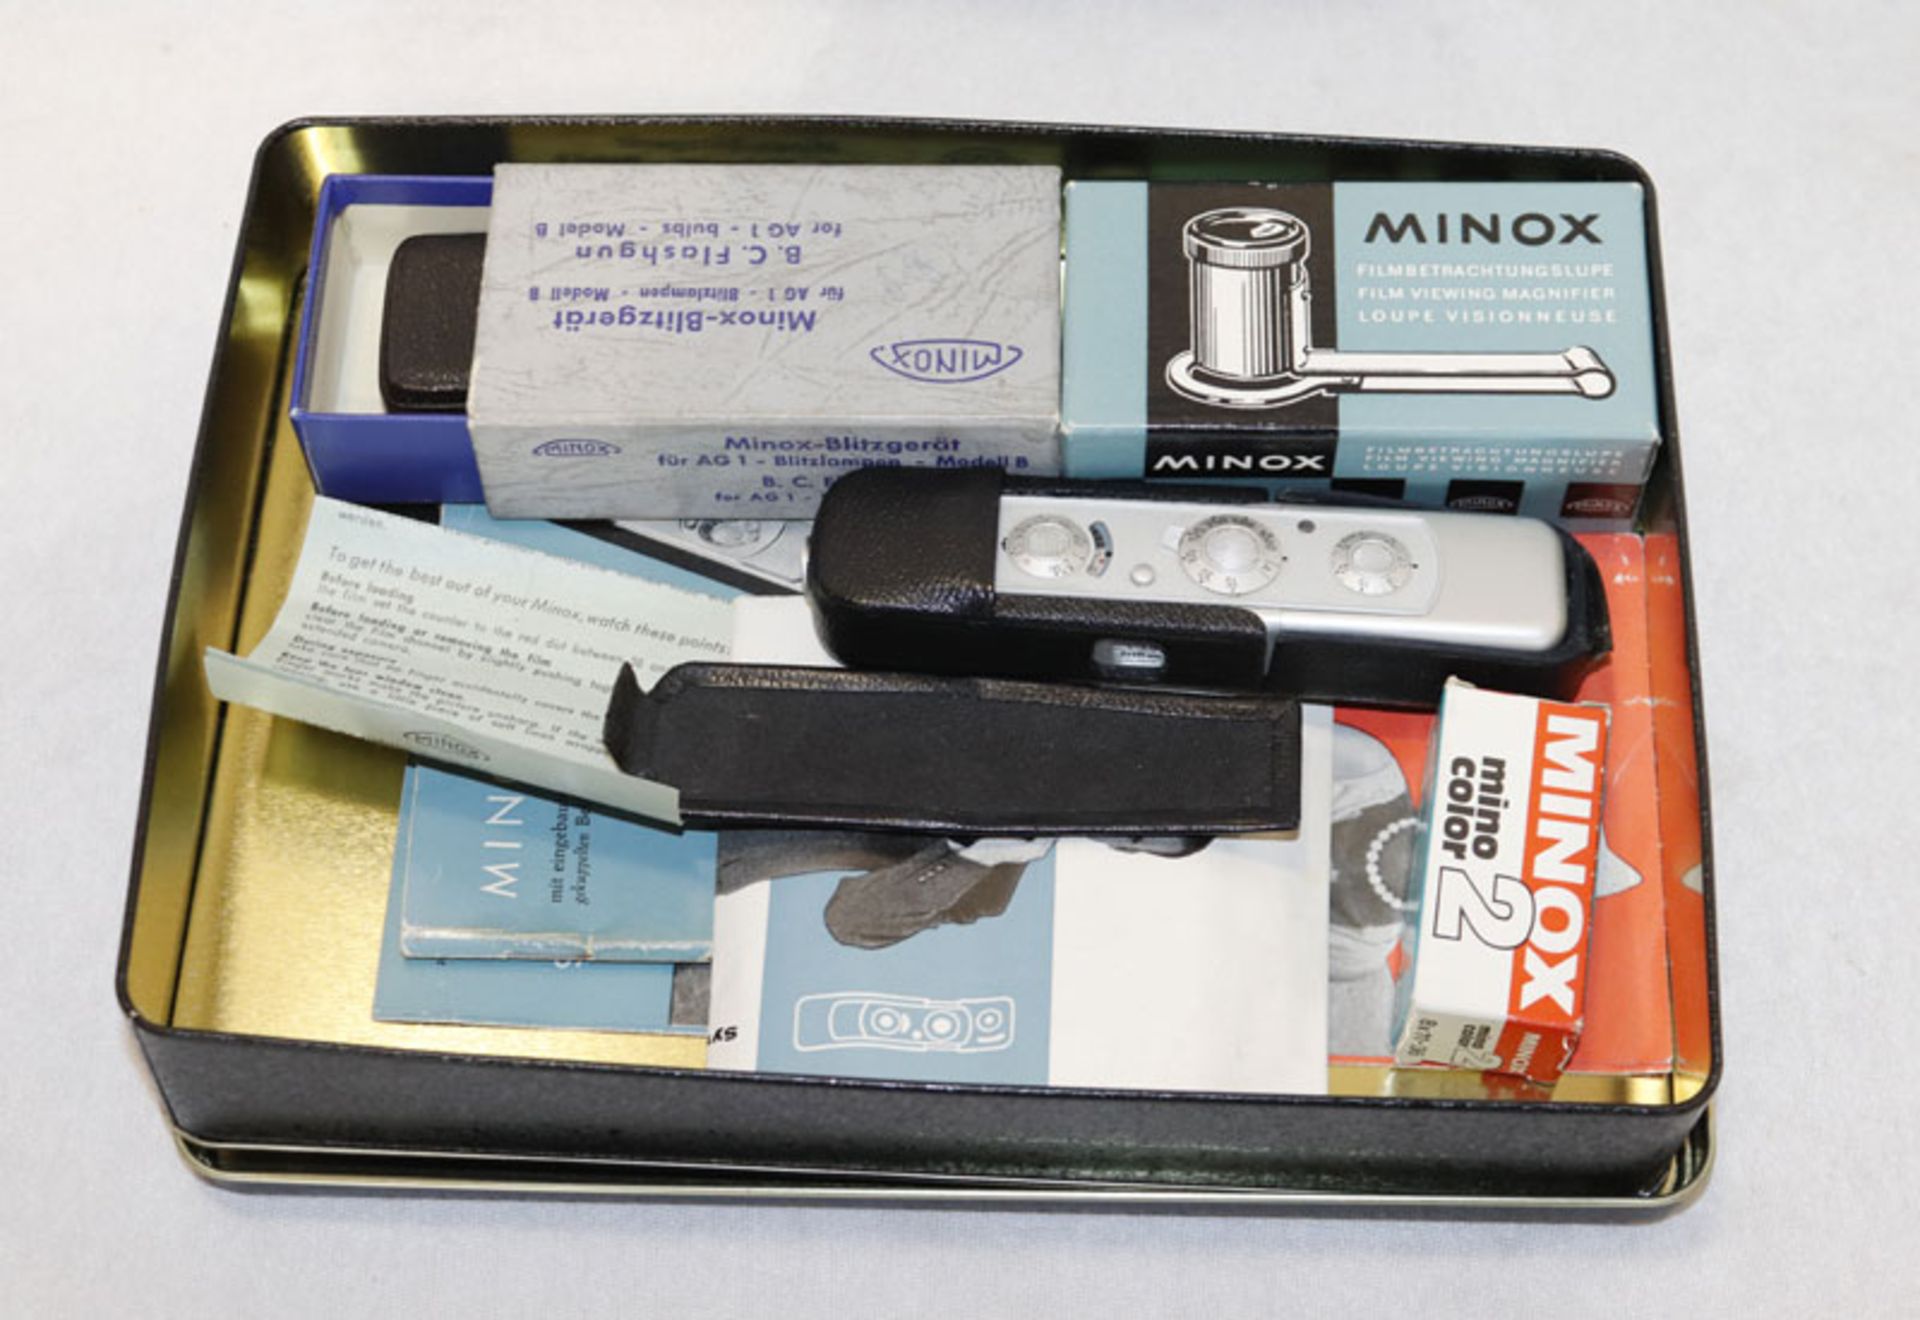 Kleinbildkamera 'Minox' 1:3.5 f=15 mm, mit Etui, sowie Blitzgerät, Filmbetrachtungslupe und